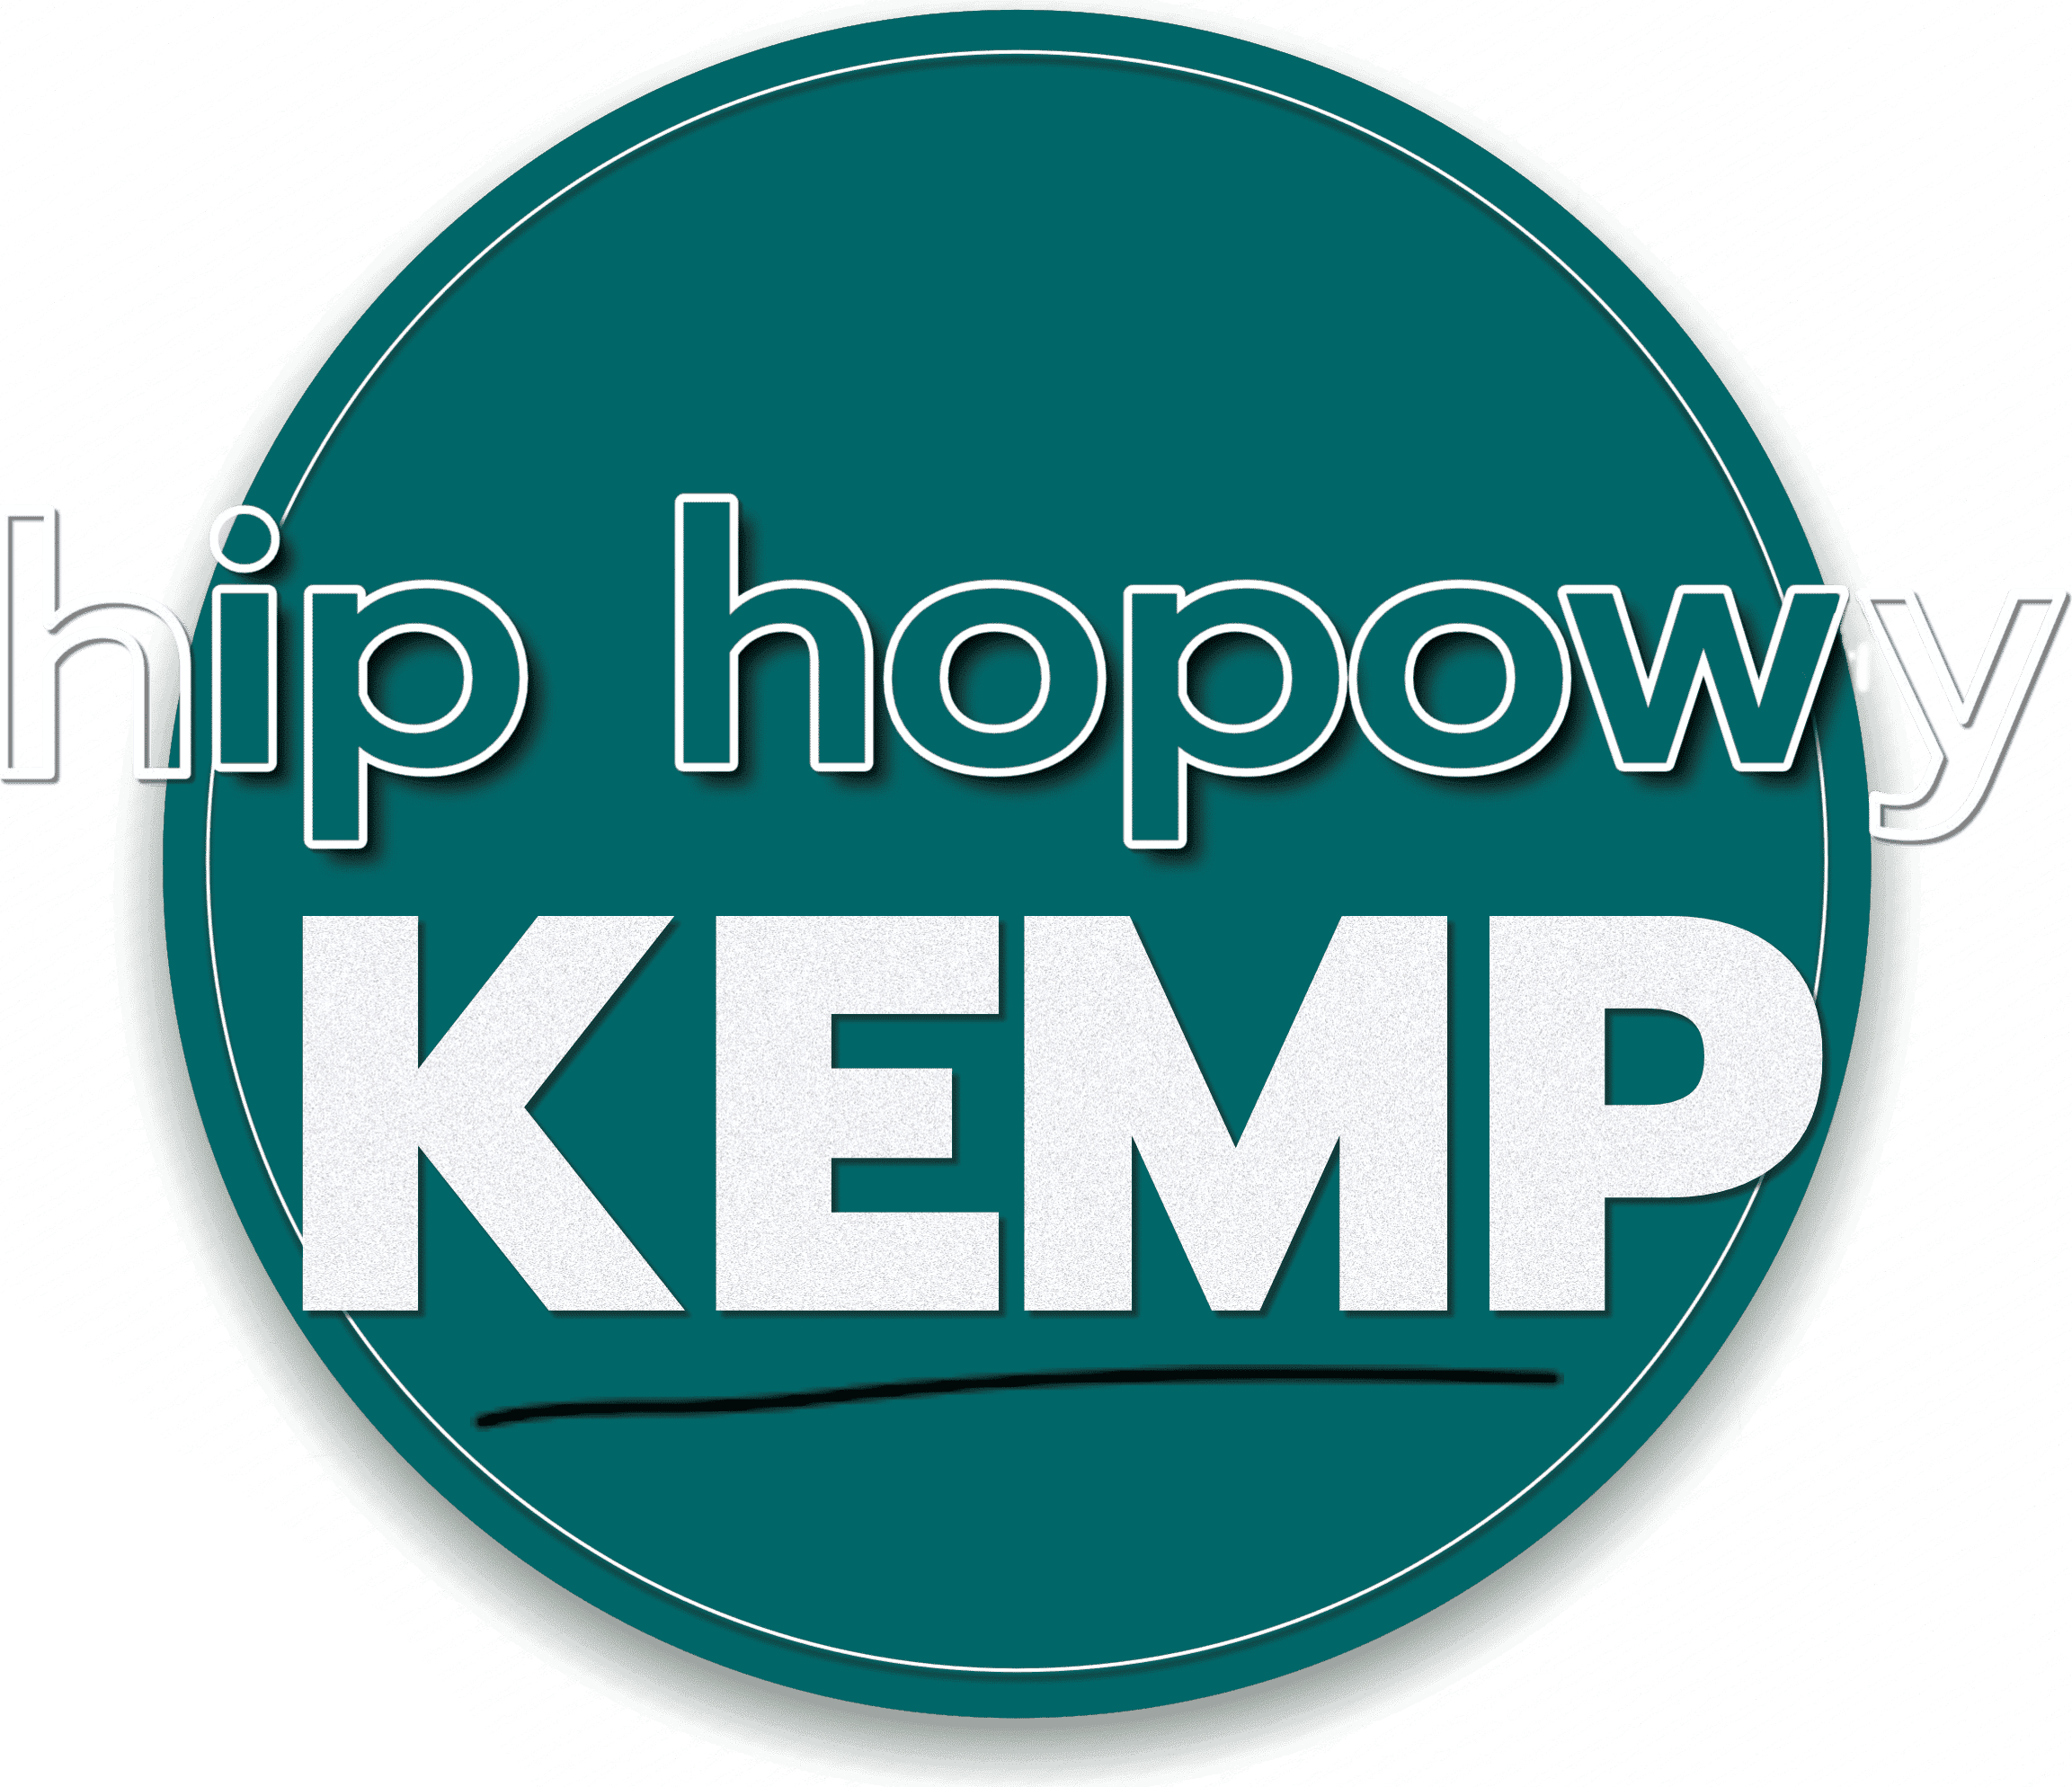 Hip hopowy KEMP